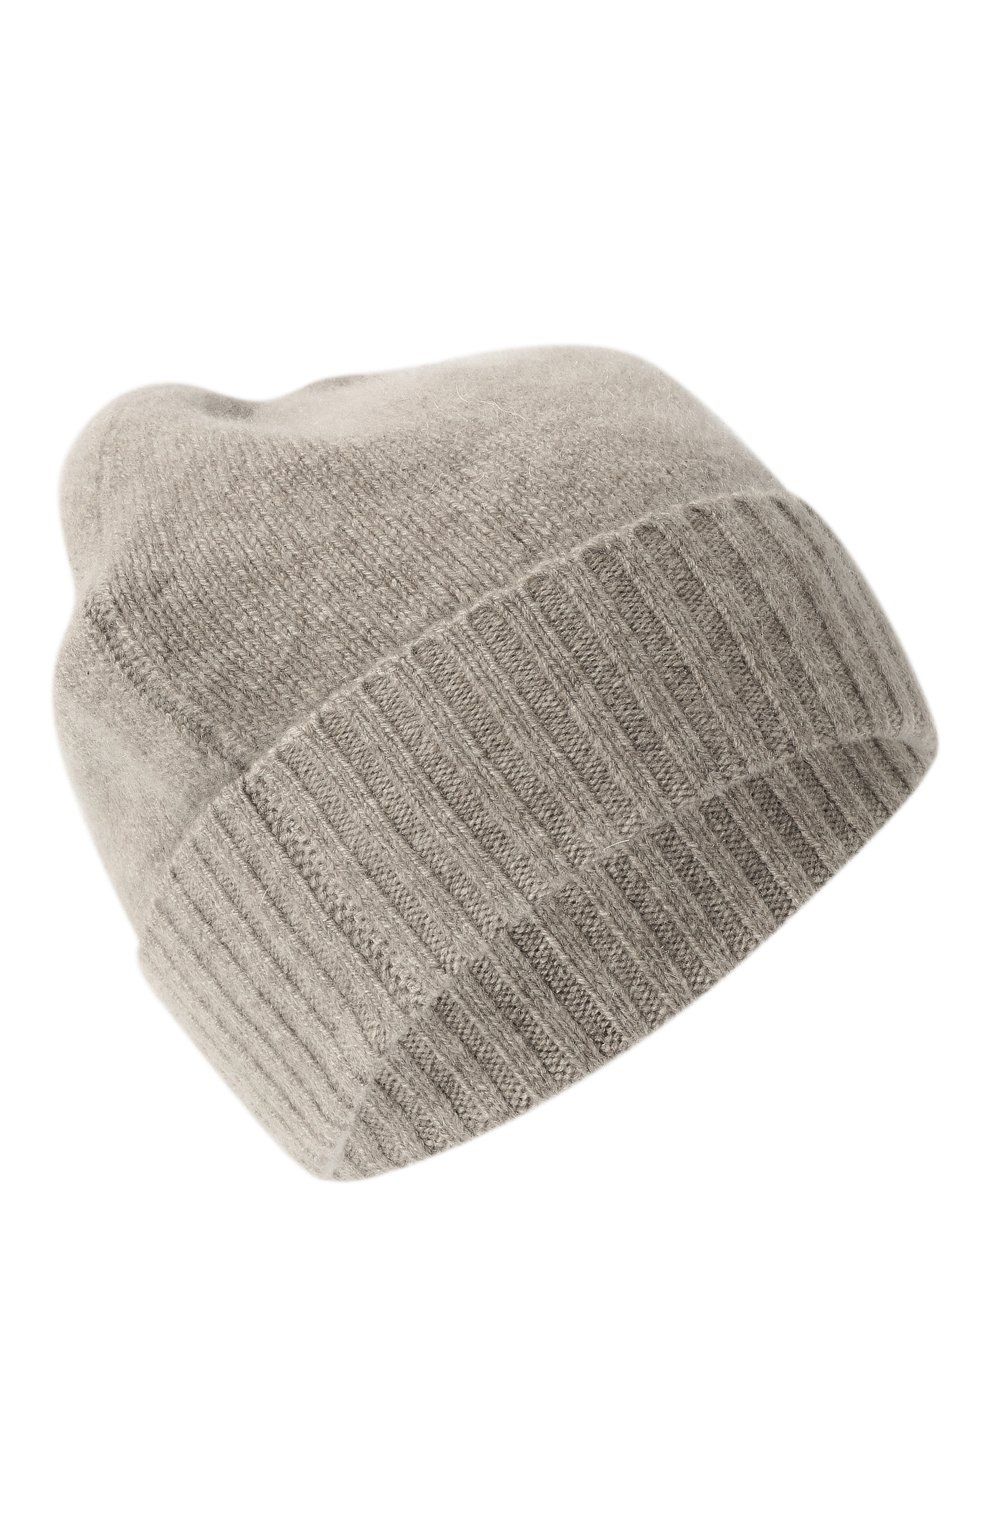 Женская кашемировая шапка ALLUDE светло-бежевого цвета, арт. 225/11245 | Фото 1 (Материал: Текстиль, Кашемир, Шерсть)